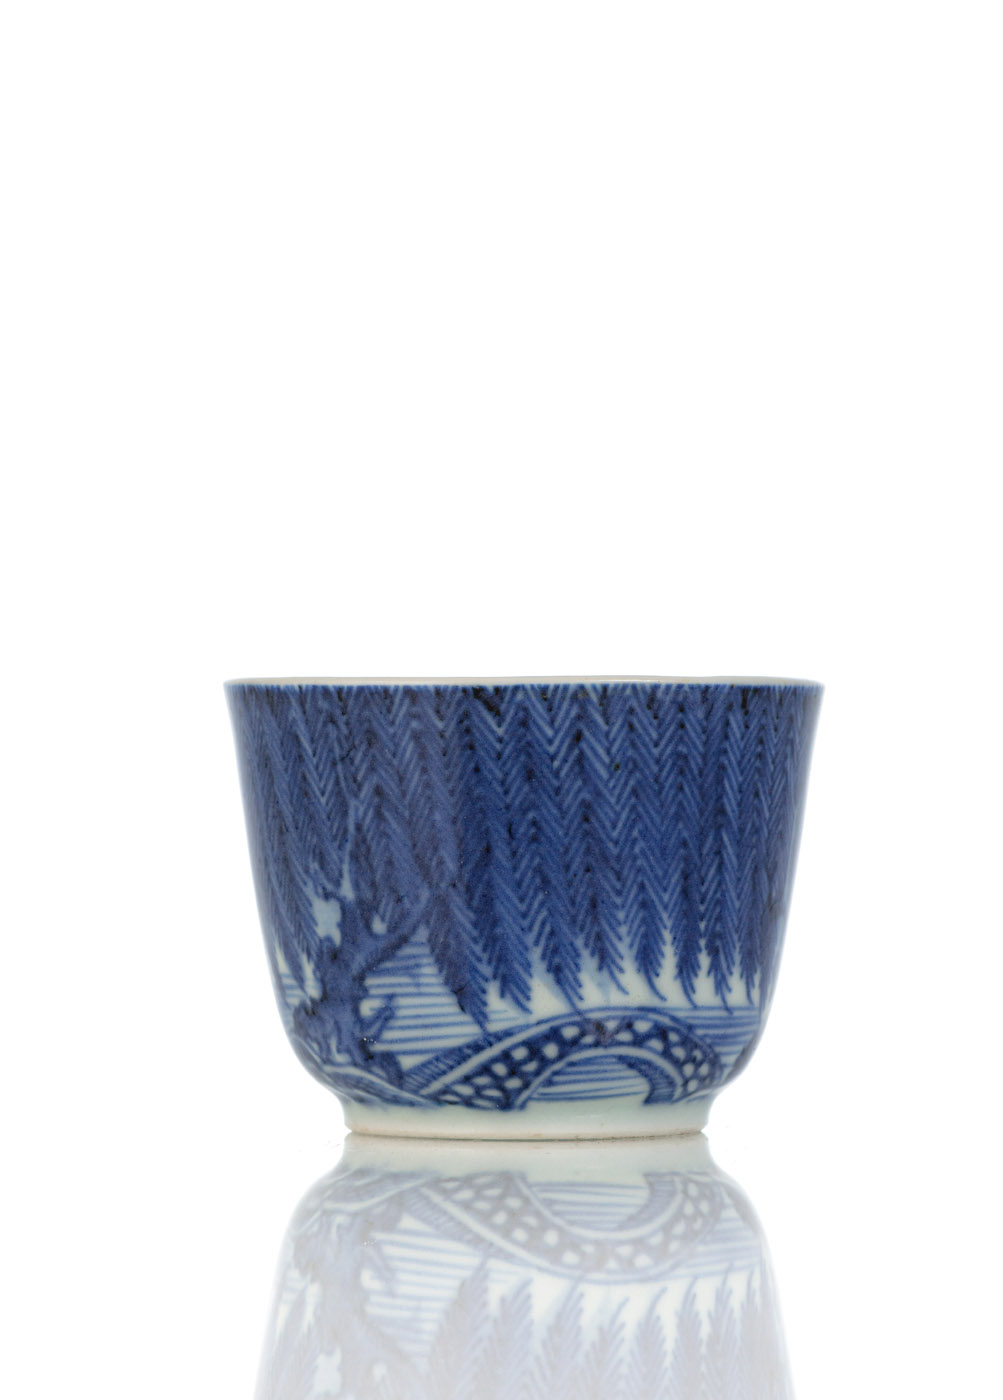 <b>Unterglasurblau dekorierter Weinbecher aus Porzellan mit Dekor von Weiden an einem Bachlauf</b>